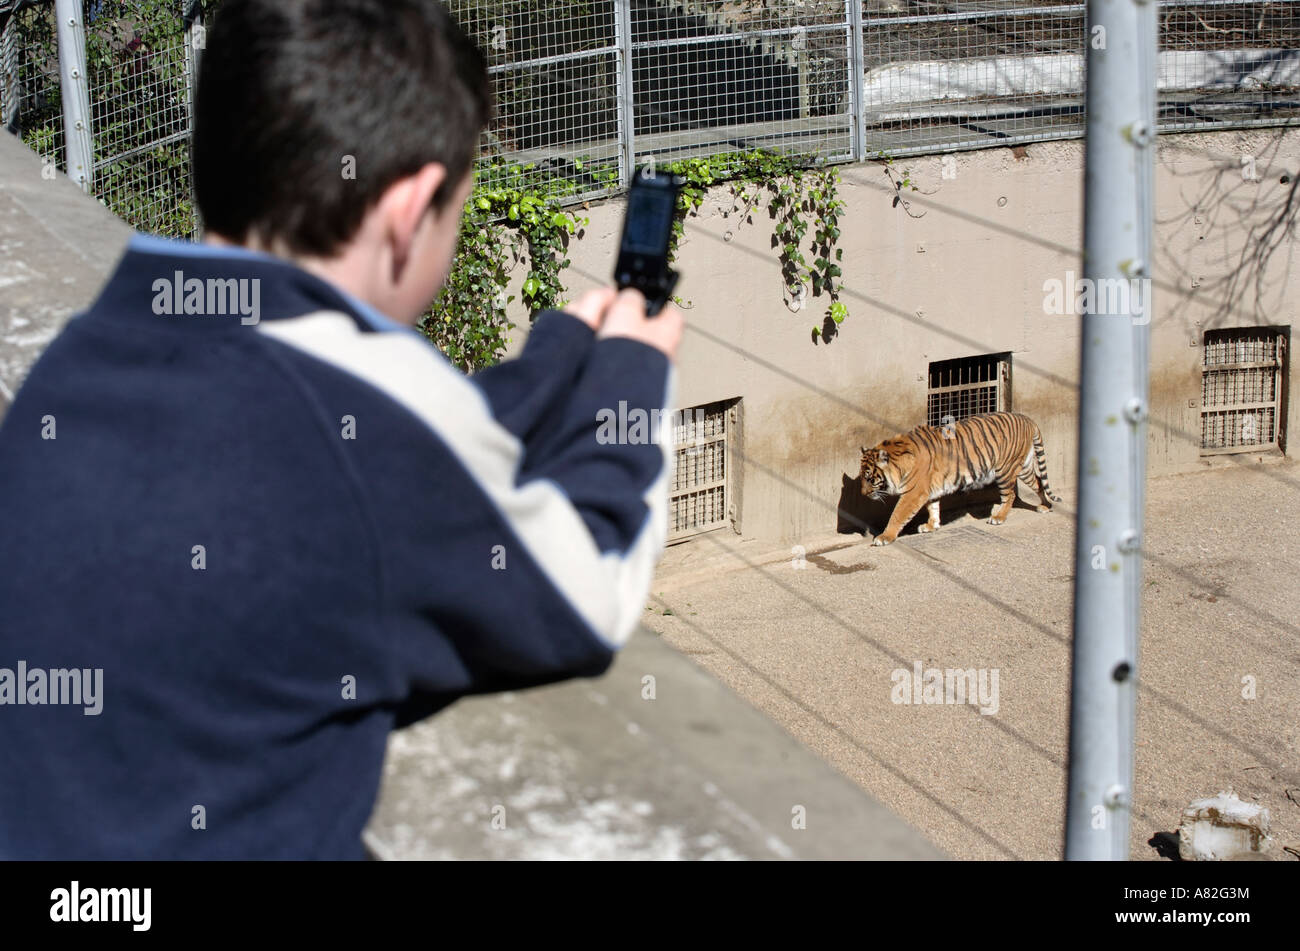 Un giovane visitatore prende una fotografia di una tigre sul suo telefono cellulare a Dudley Zoo nel West Midlands, Regno Unito Foto Stock